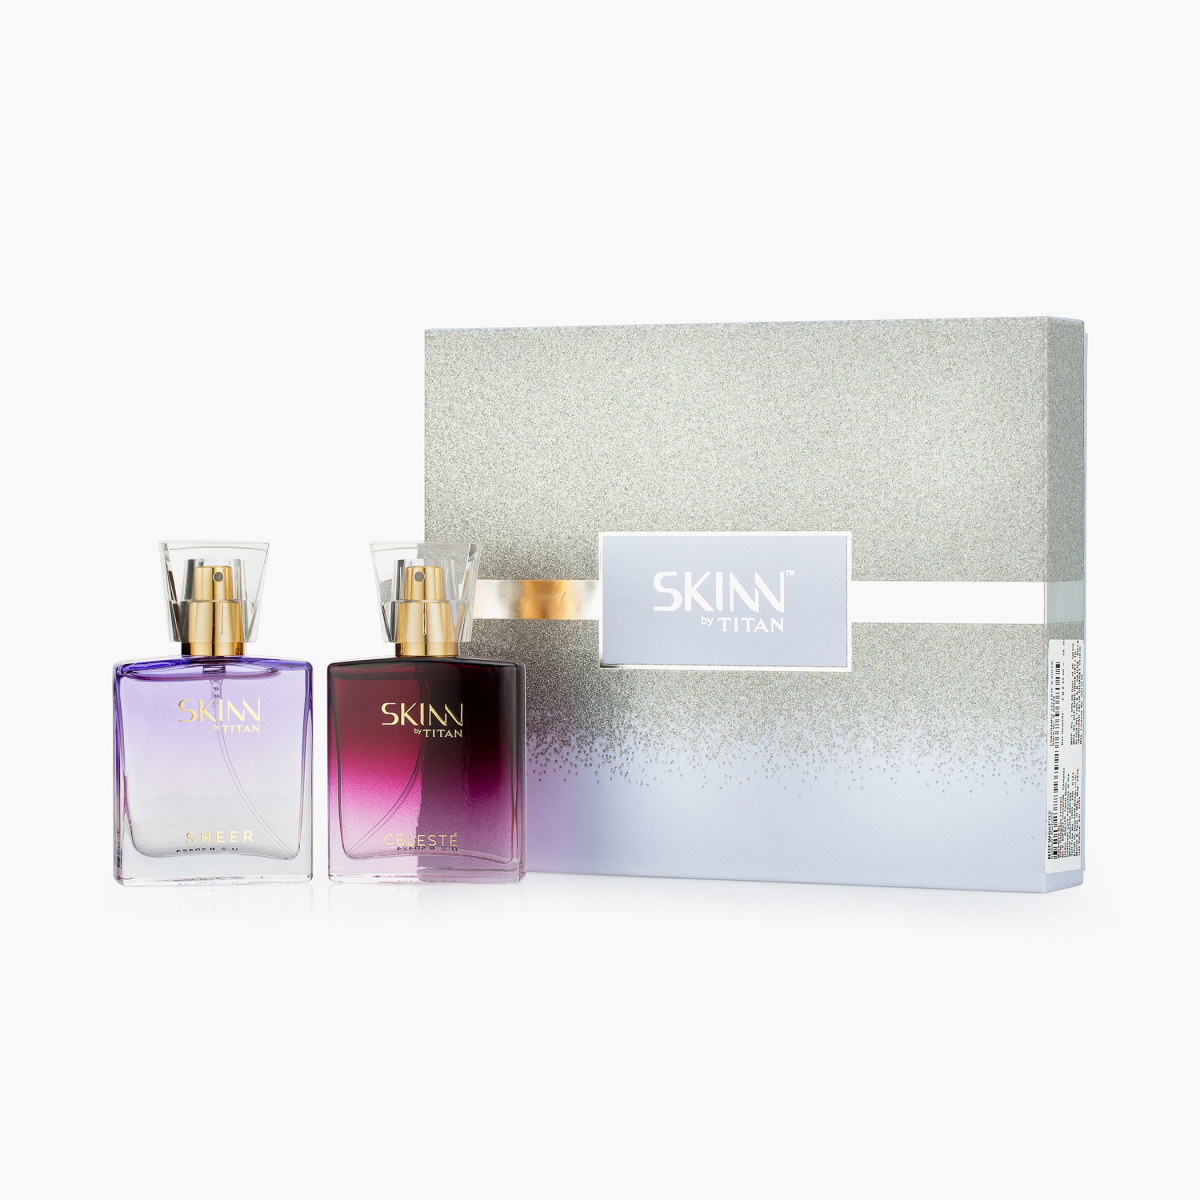 SKINN Celeste & Sheer Fragrance for Women